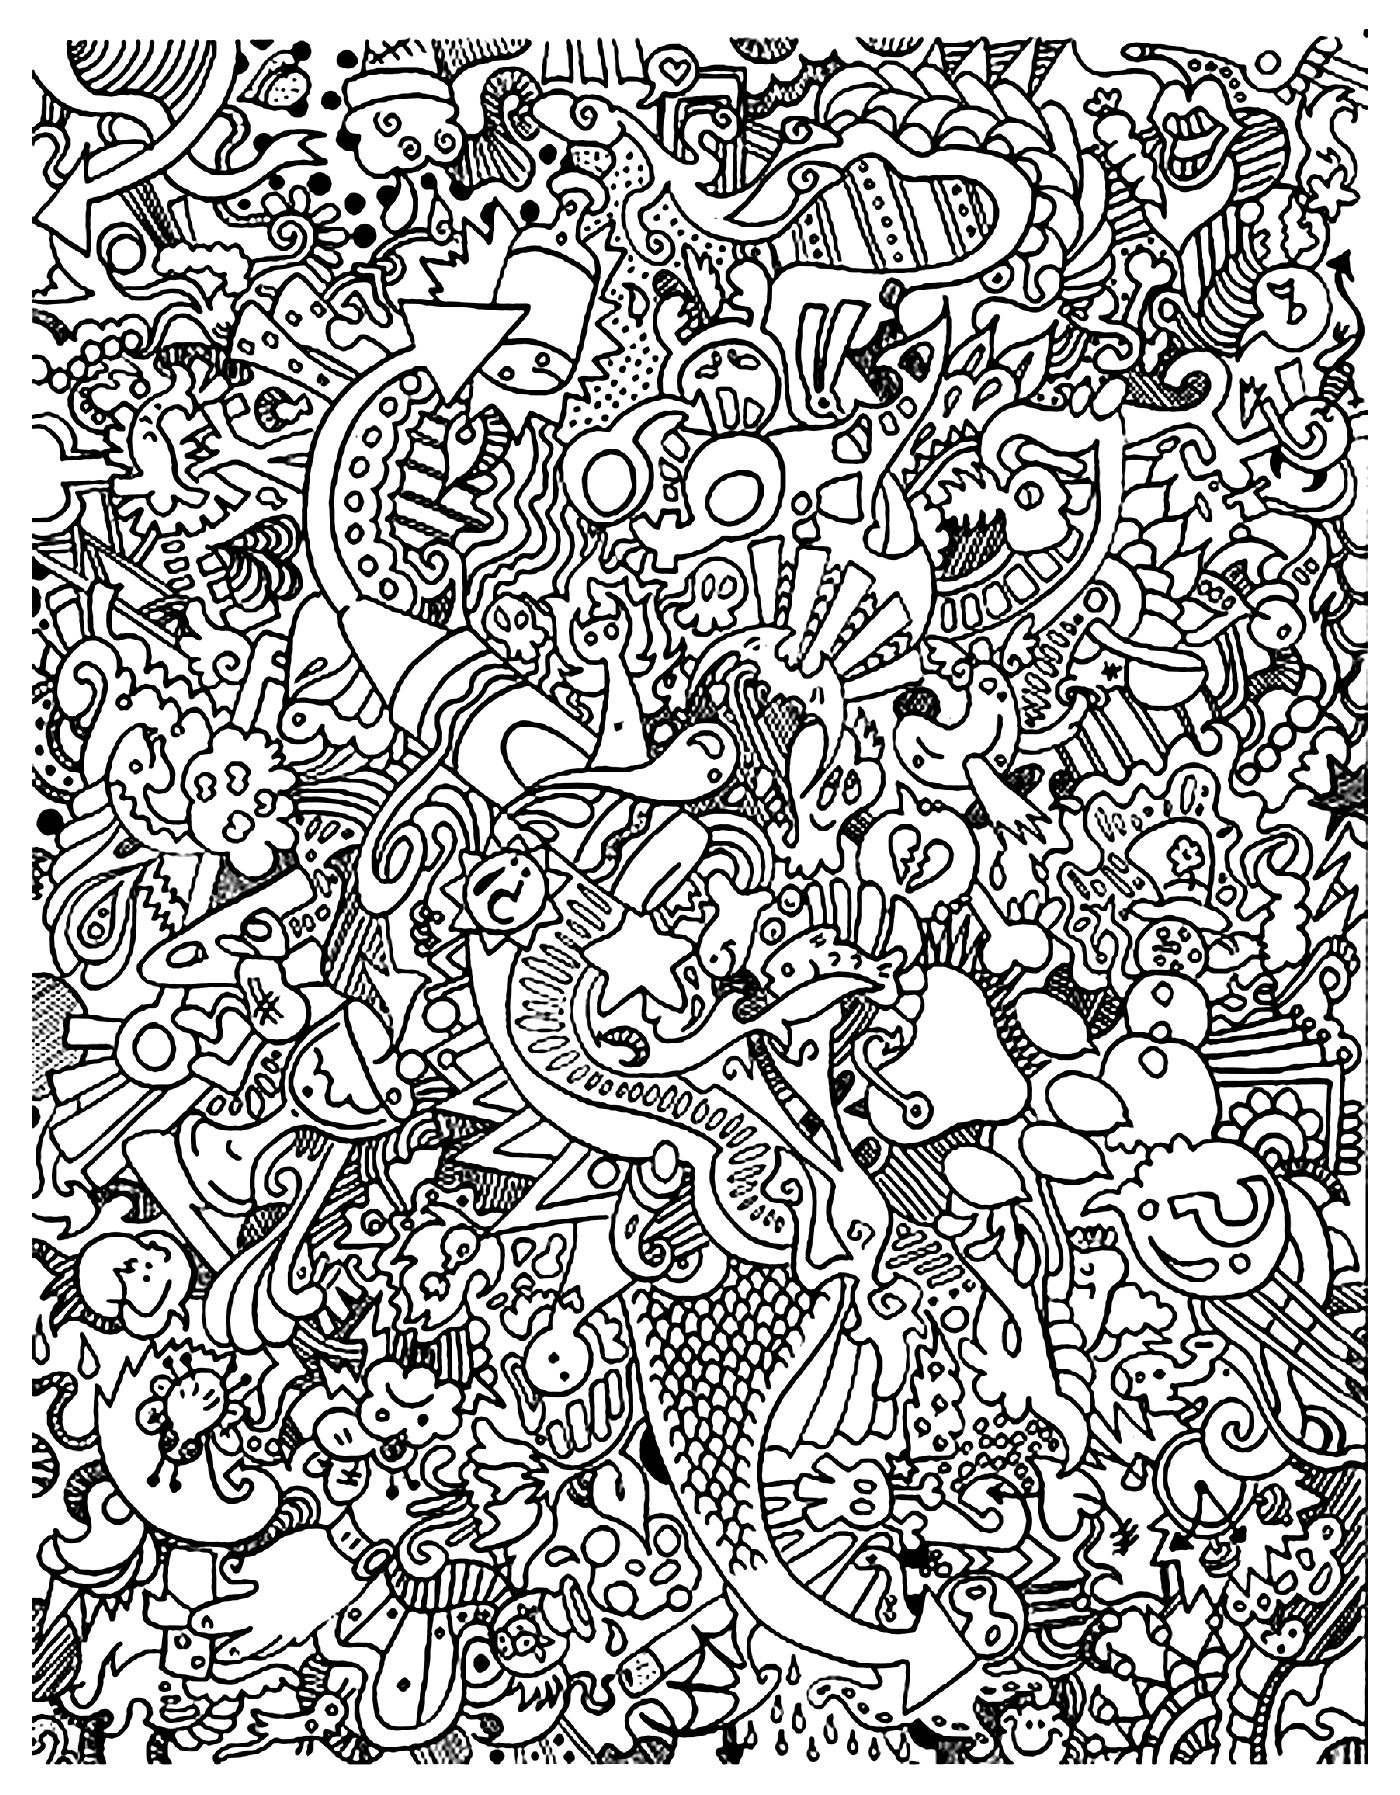 Gribouillage doodle art - 2